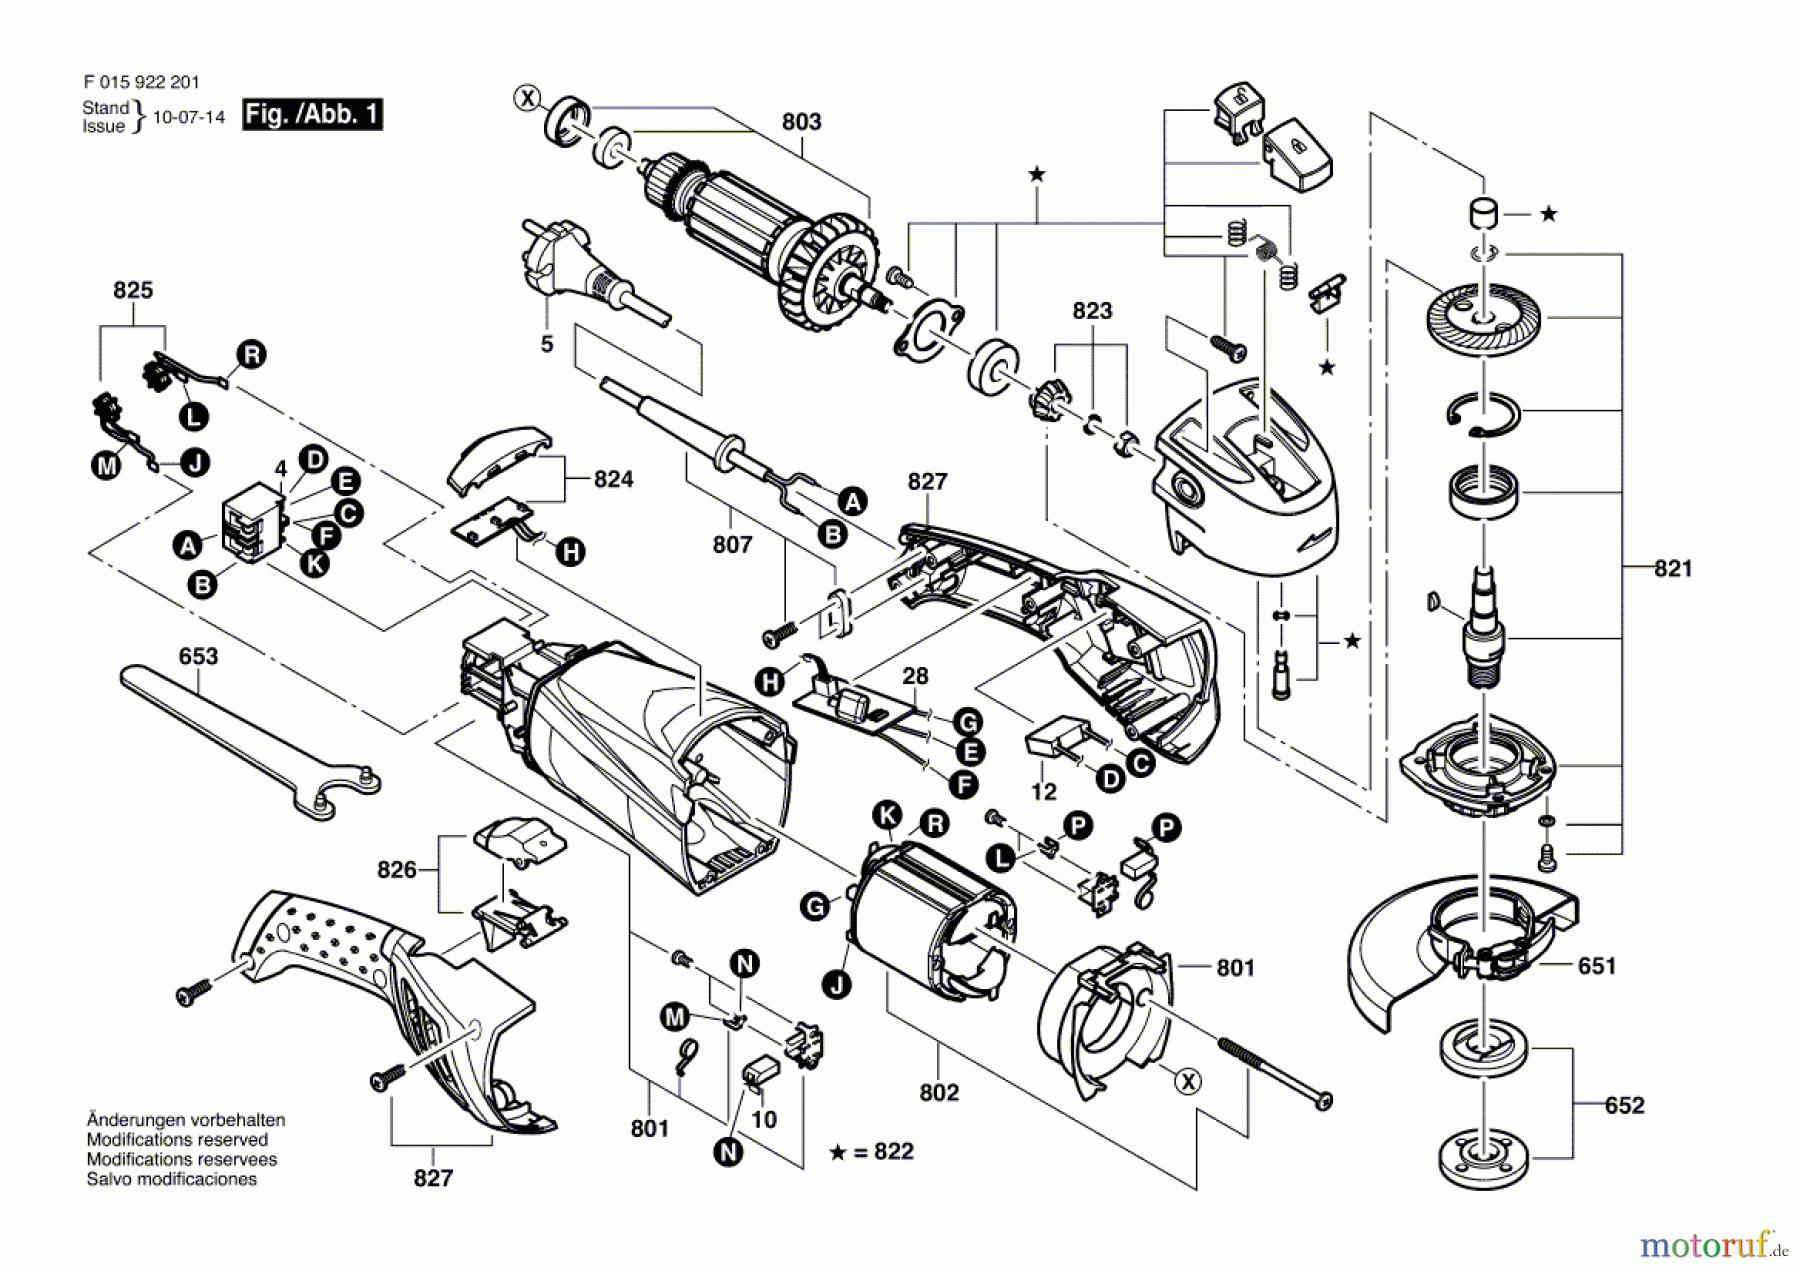  Bosch Werkzeug Winkelschleifer 9222 Seite 1